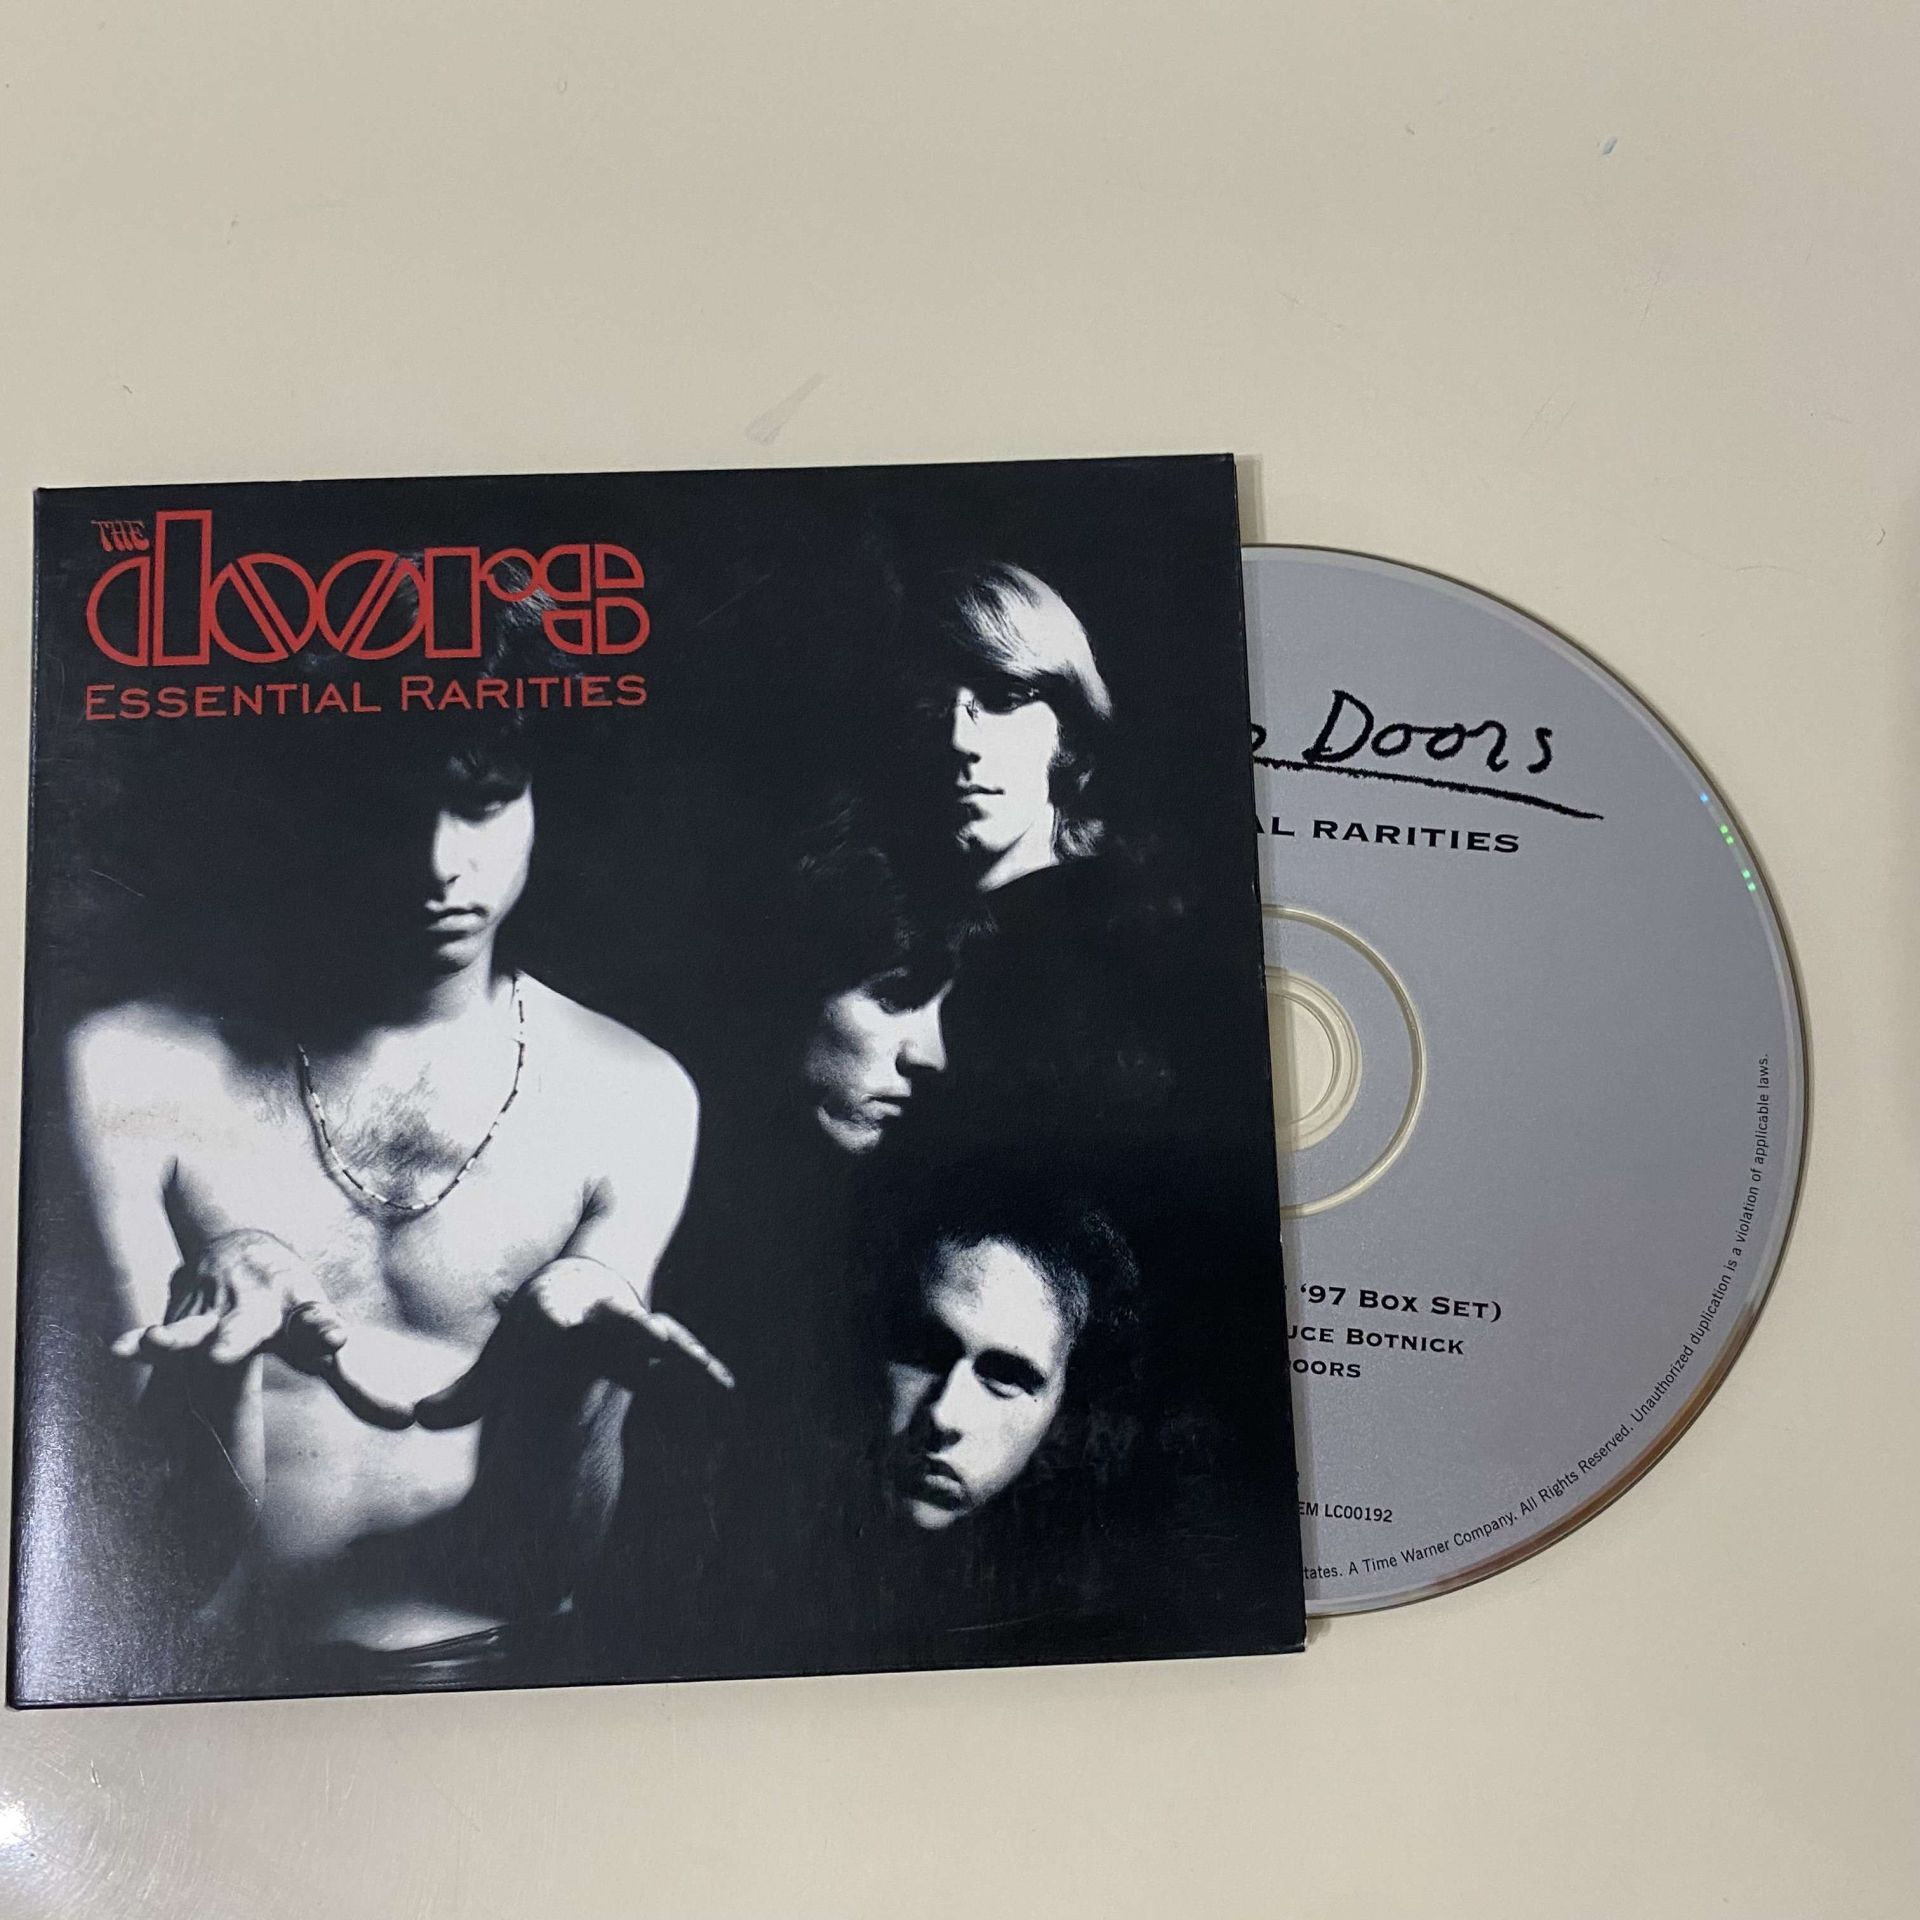 The Doors – Essential Rarities